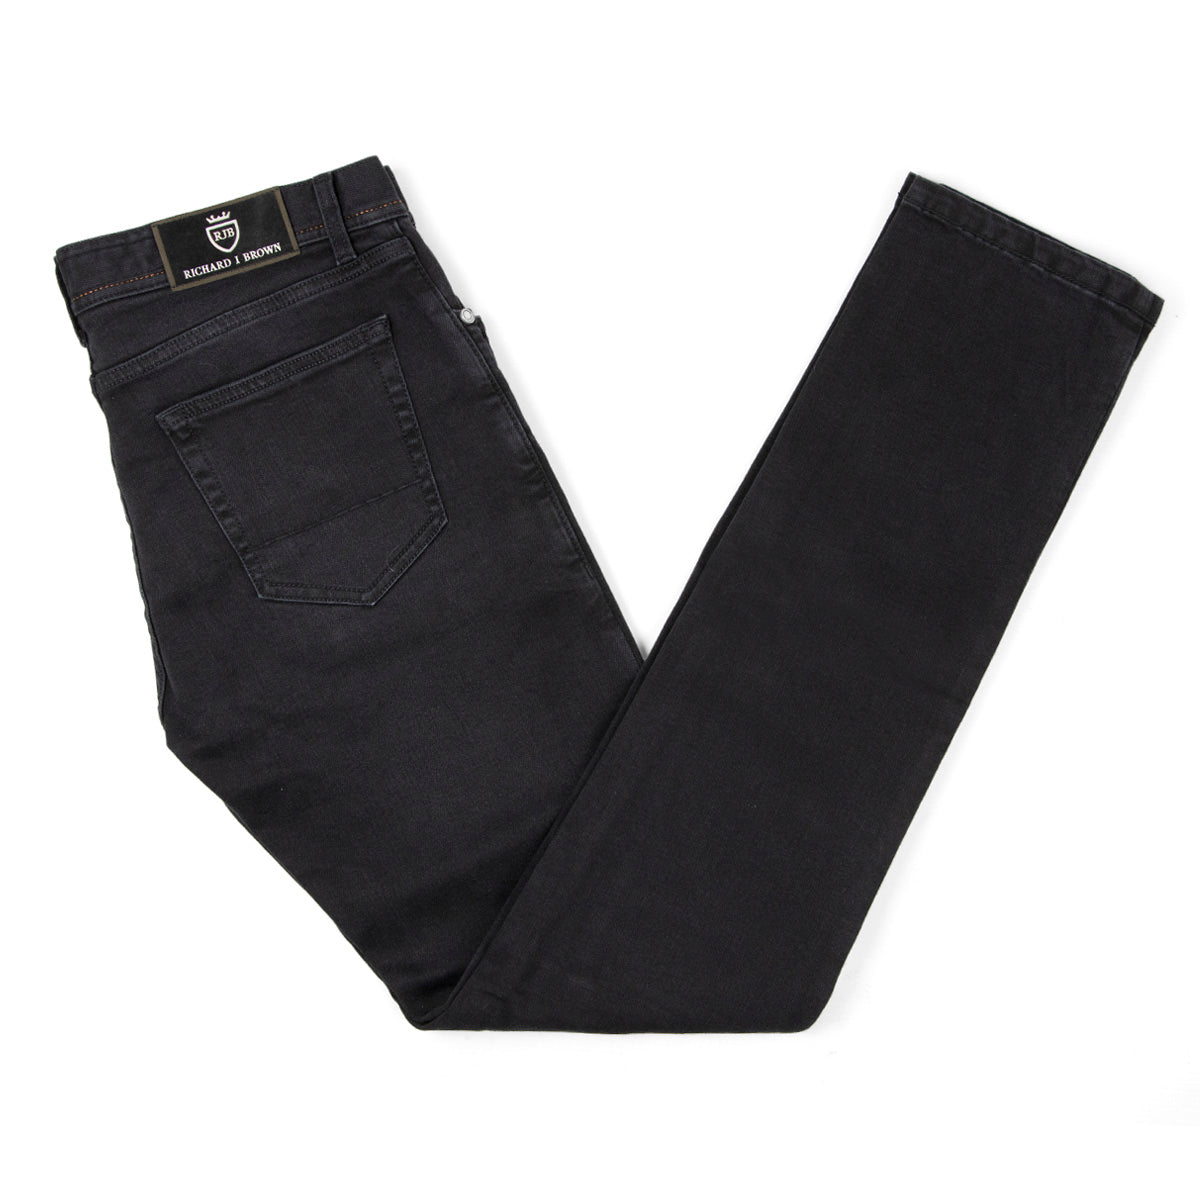 Washed Black Denim 'Tokyo' Slim Fit Jeans  Richard J. Brown   